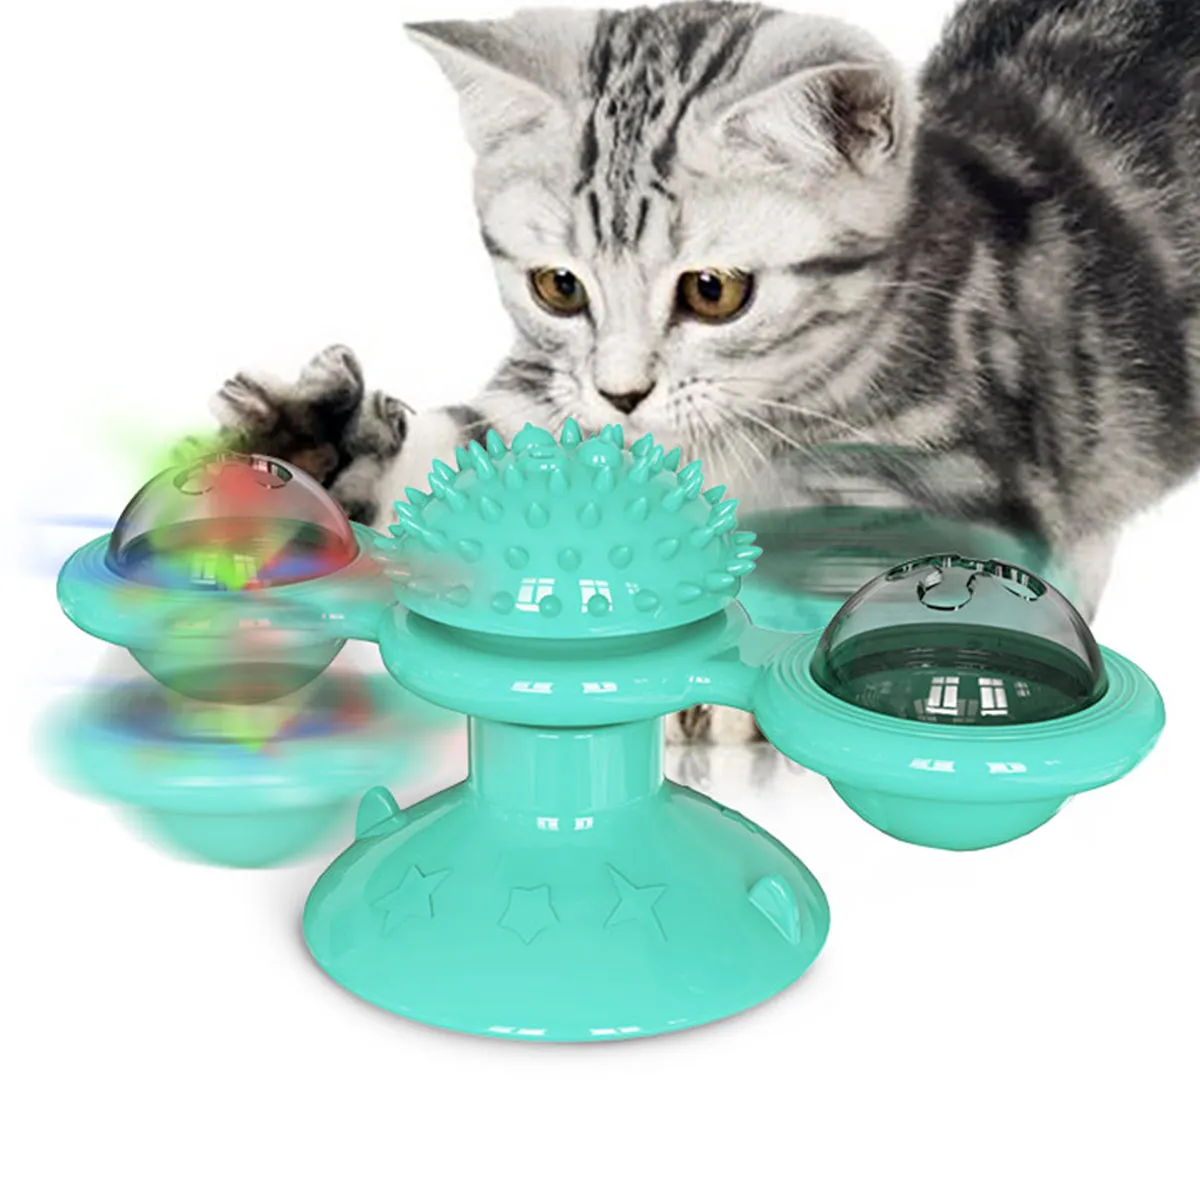 

2021 забавная игрушка-ветряная мельница для кошек, забавные вращающиеся игрушки для массажа кошек С Кошачьей Мятой, Светодиодные шарики для ч...